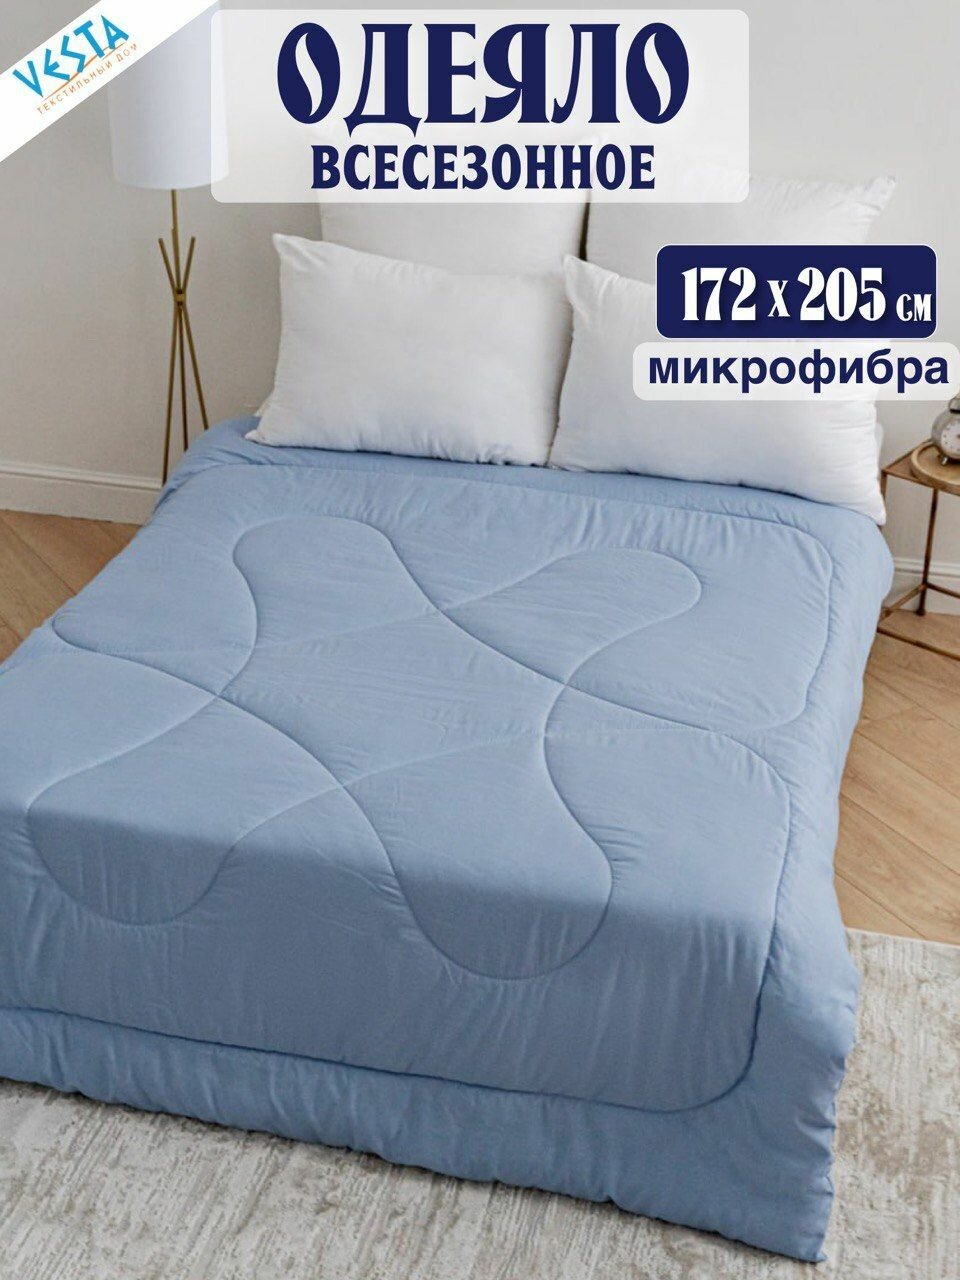 Одеяло Vesta всесезонное 2 спальное, наполнитель полиэфир, гипоалергенное, покрывало летнее на дачу и в дом голубое 172х205 см